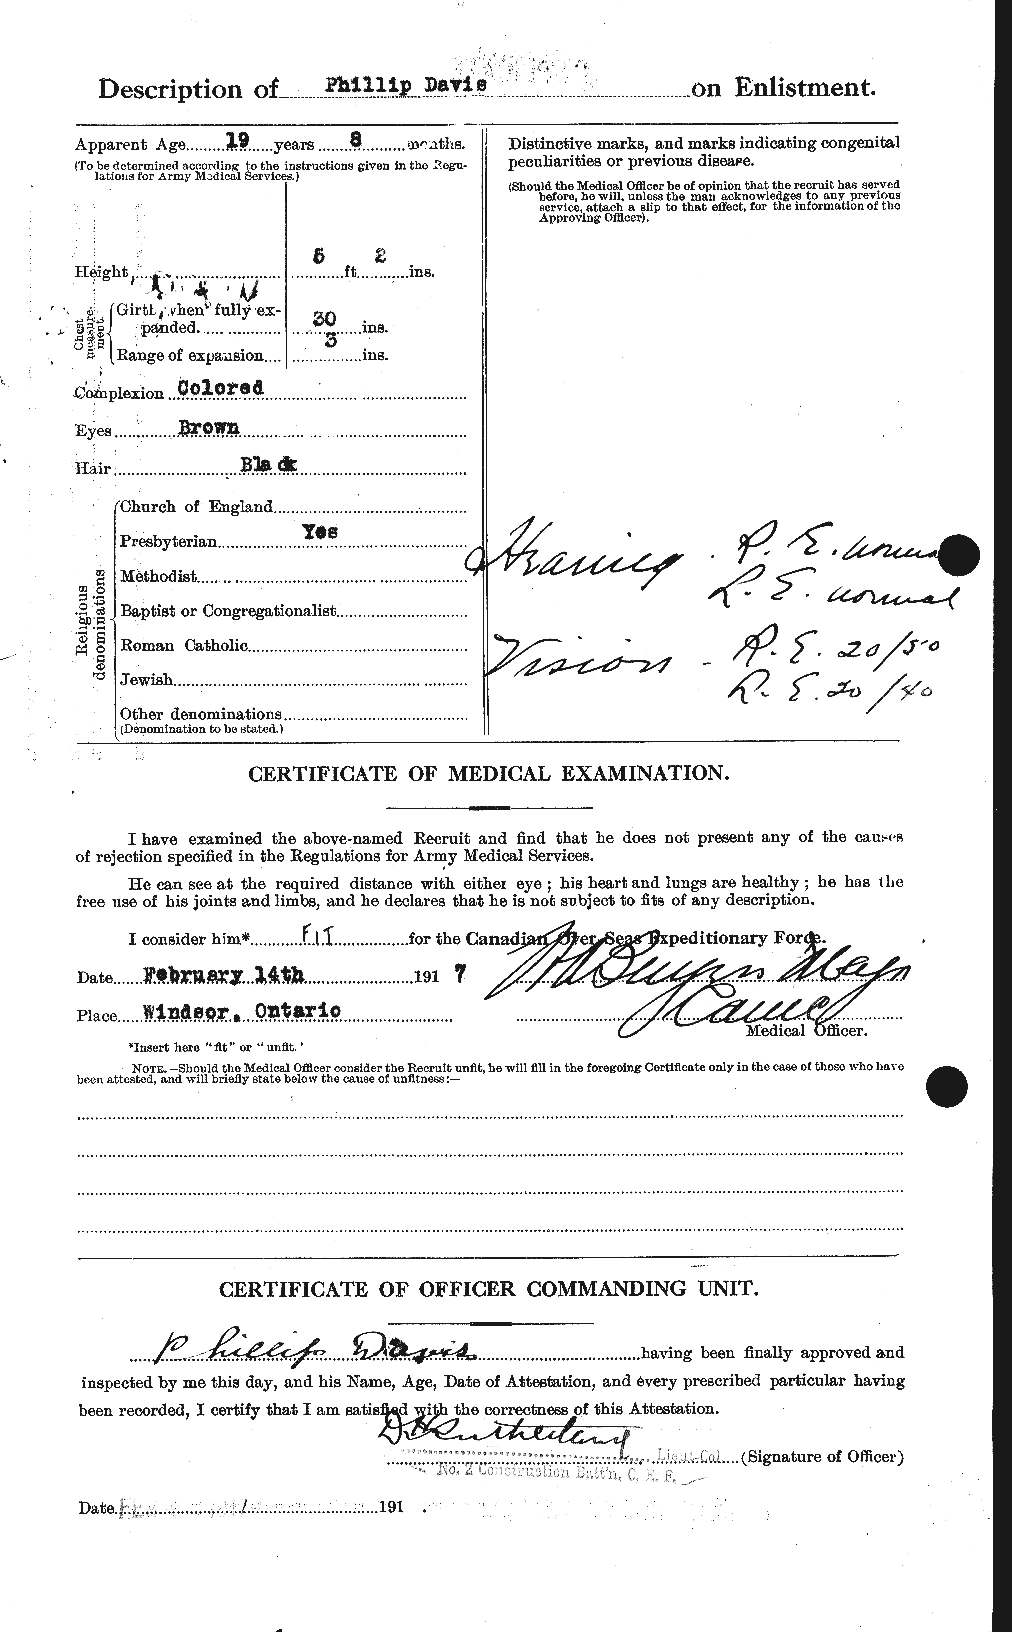 Dossiers du Personnel de la Première Guerre mondiale - CEC 284228b